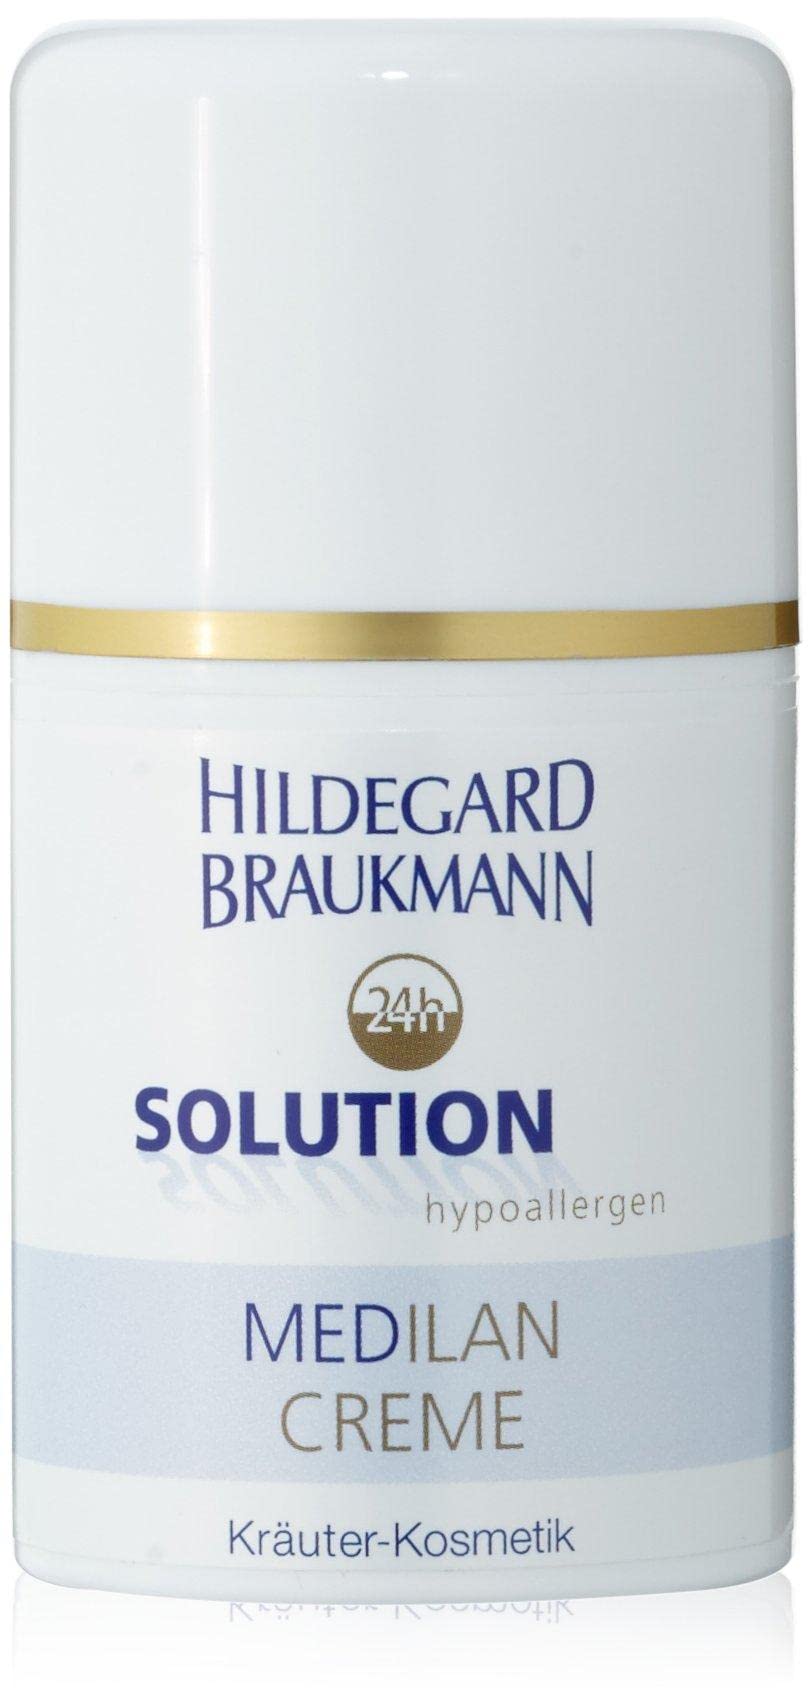 Hildegard Braukmann 24h Solution Medilan Creme, 50 ml